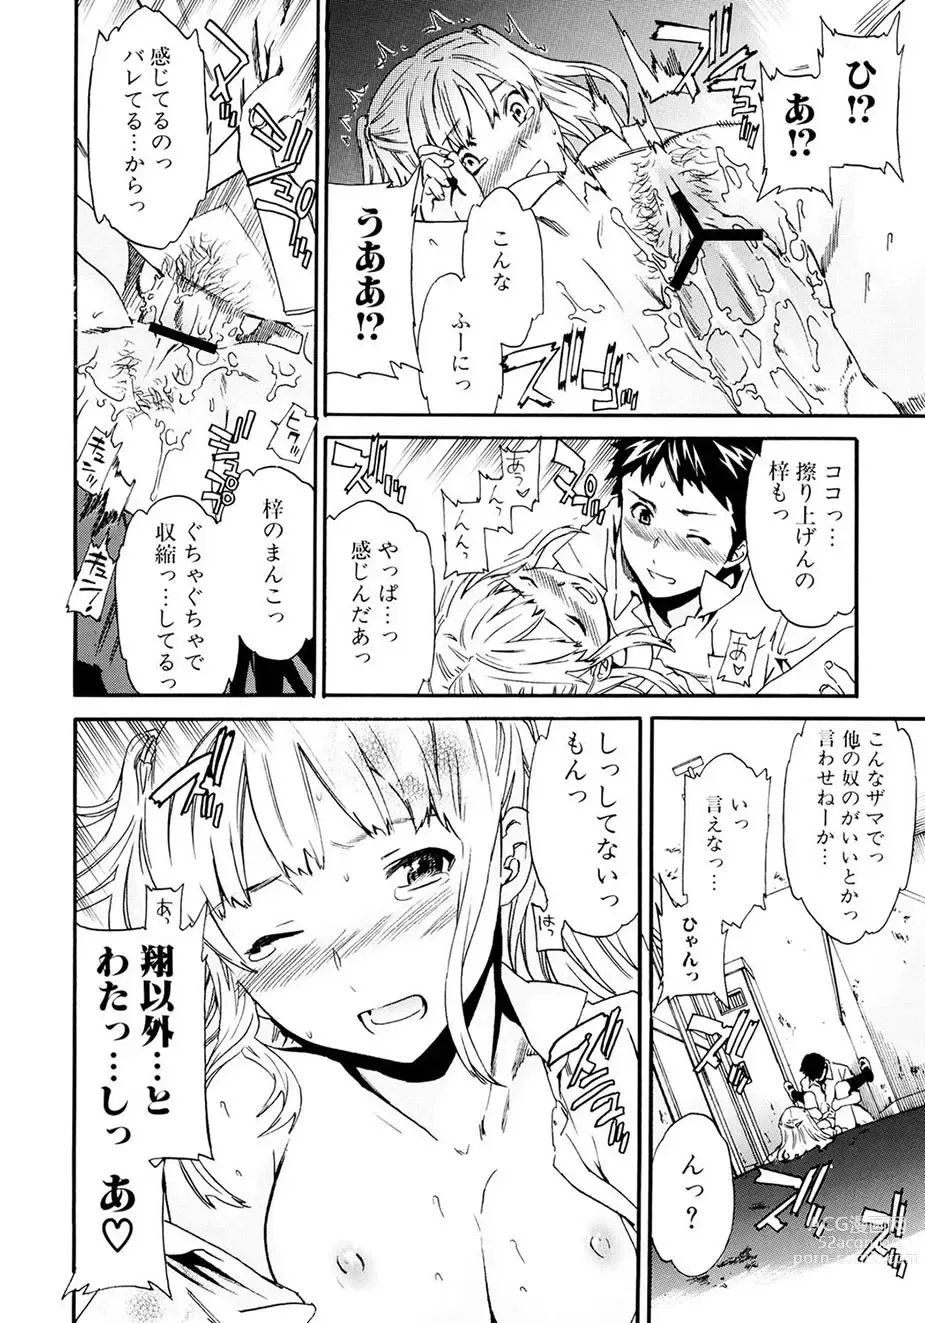 Page 143 of manga Shitai Kara Suru no